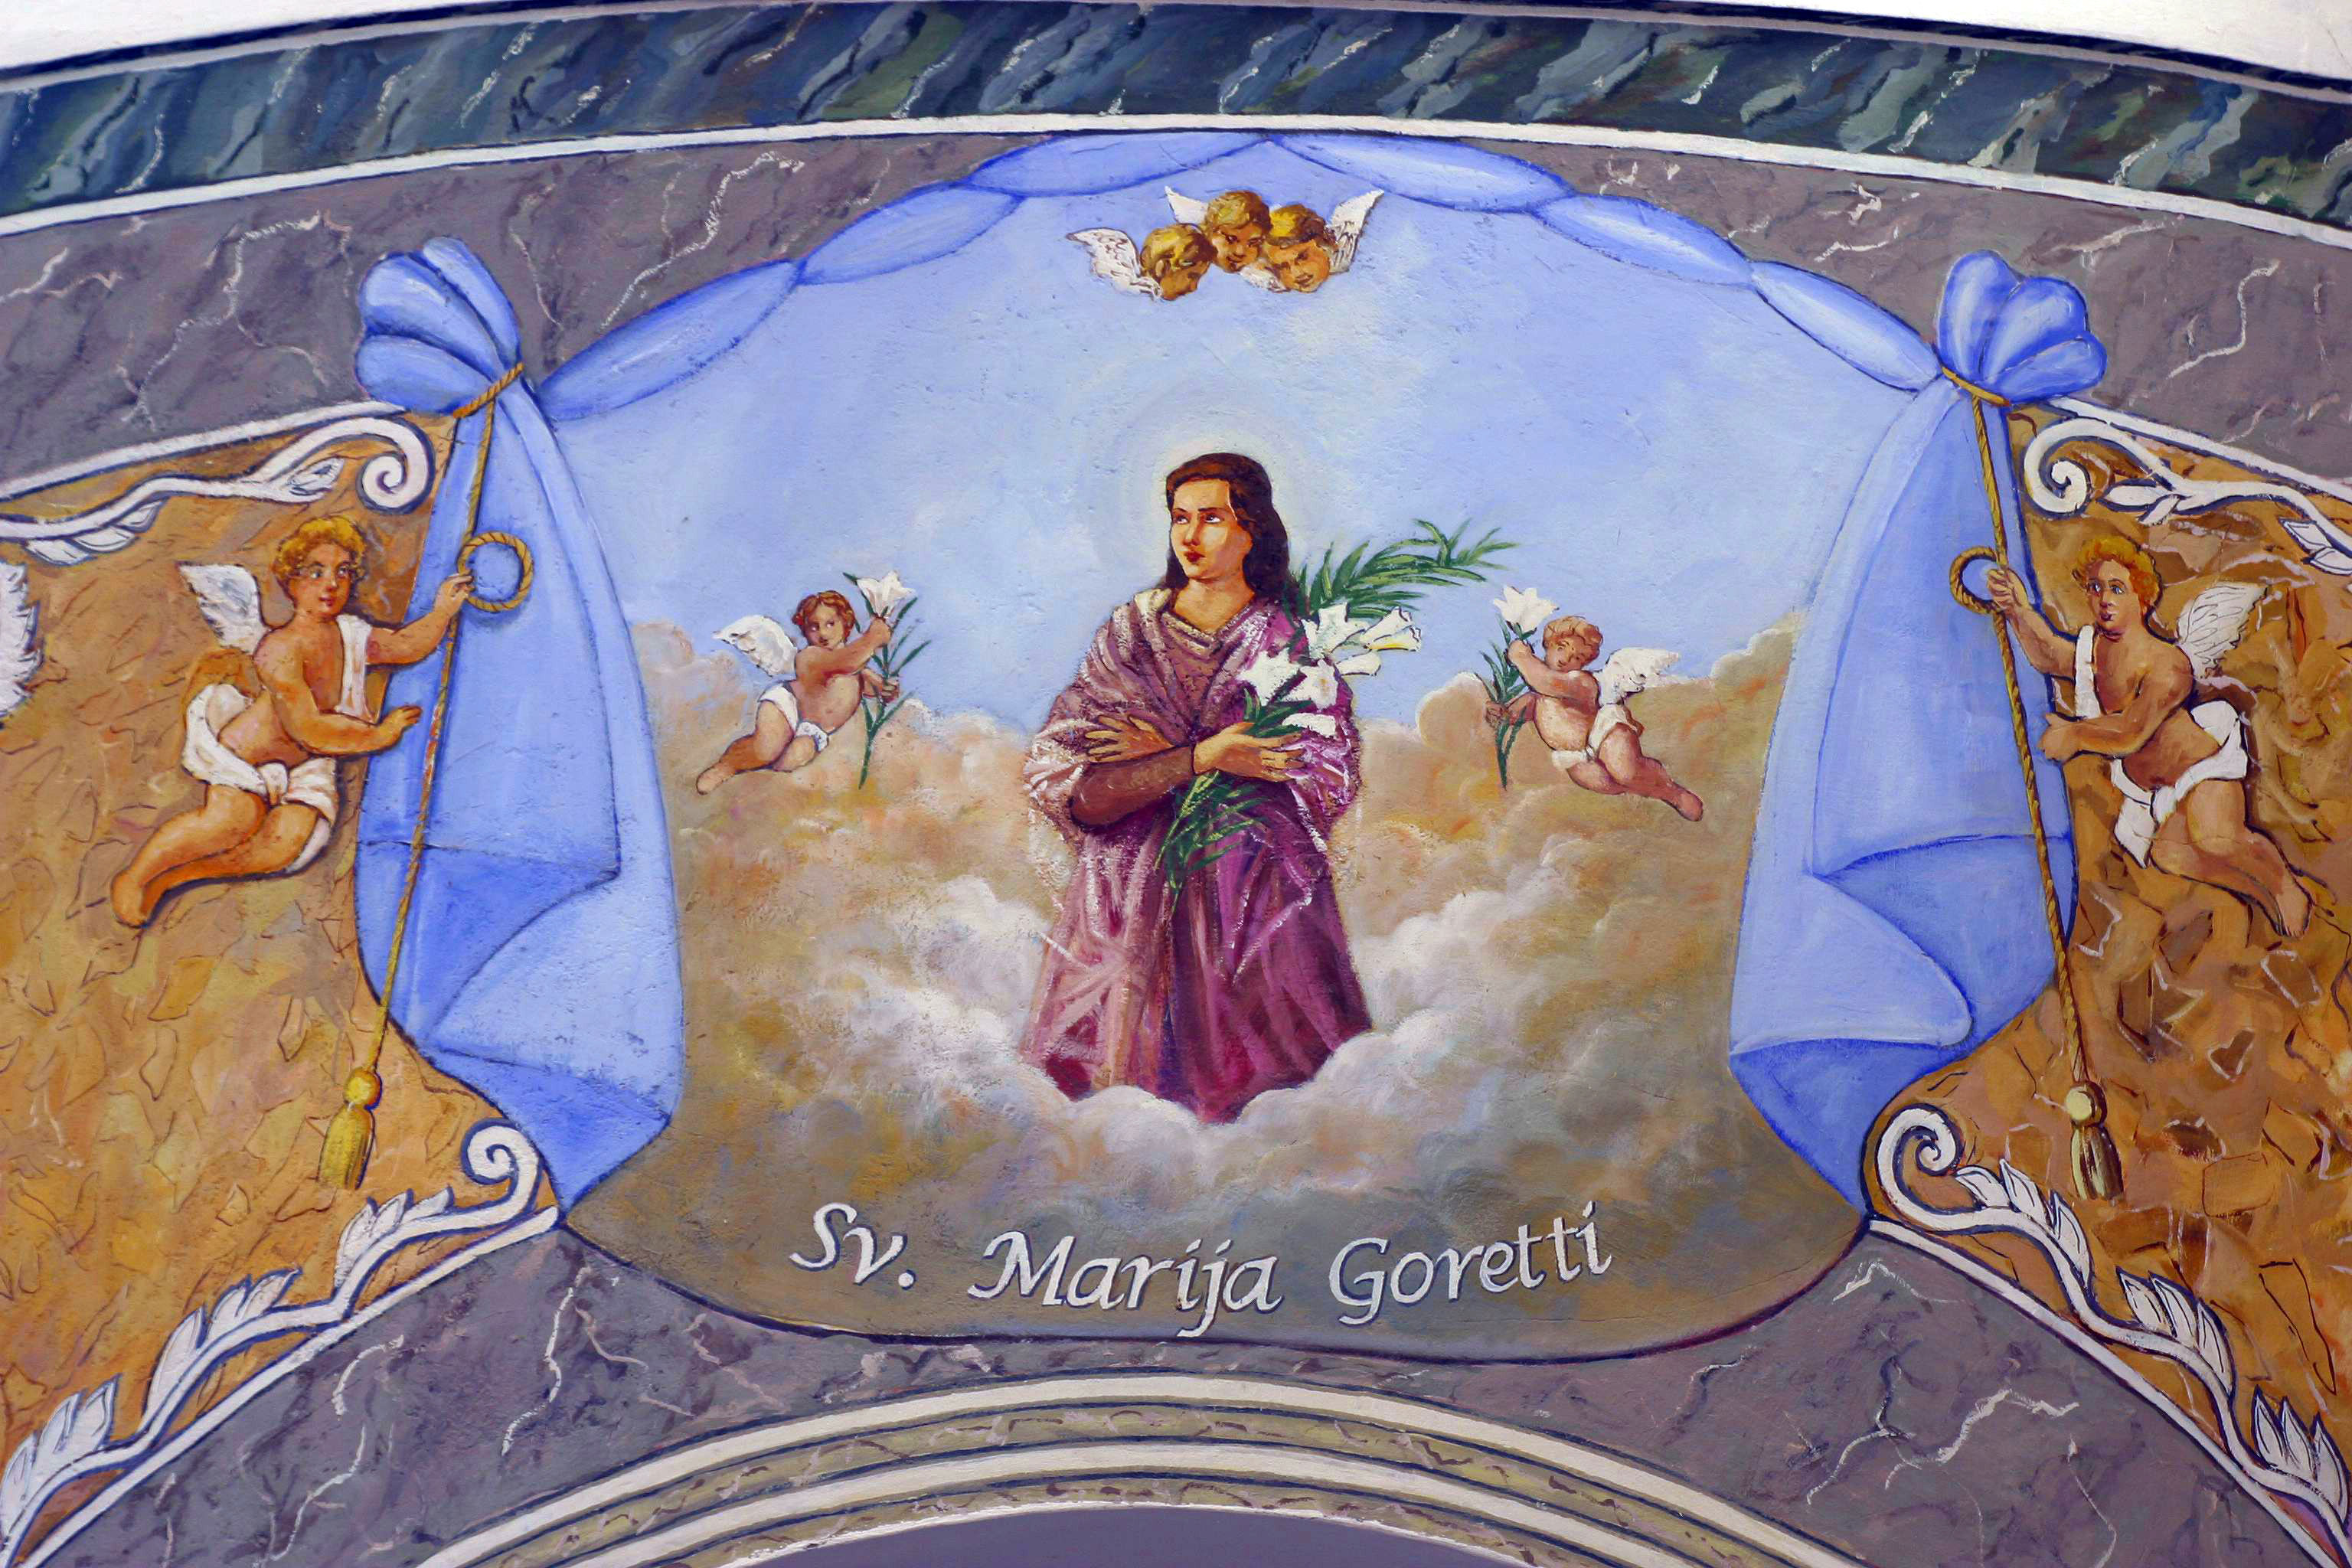 Saint Maria Goretti (1890–1902)